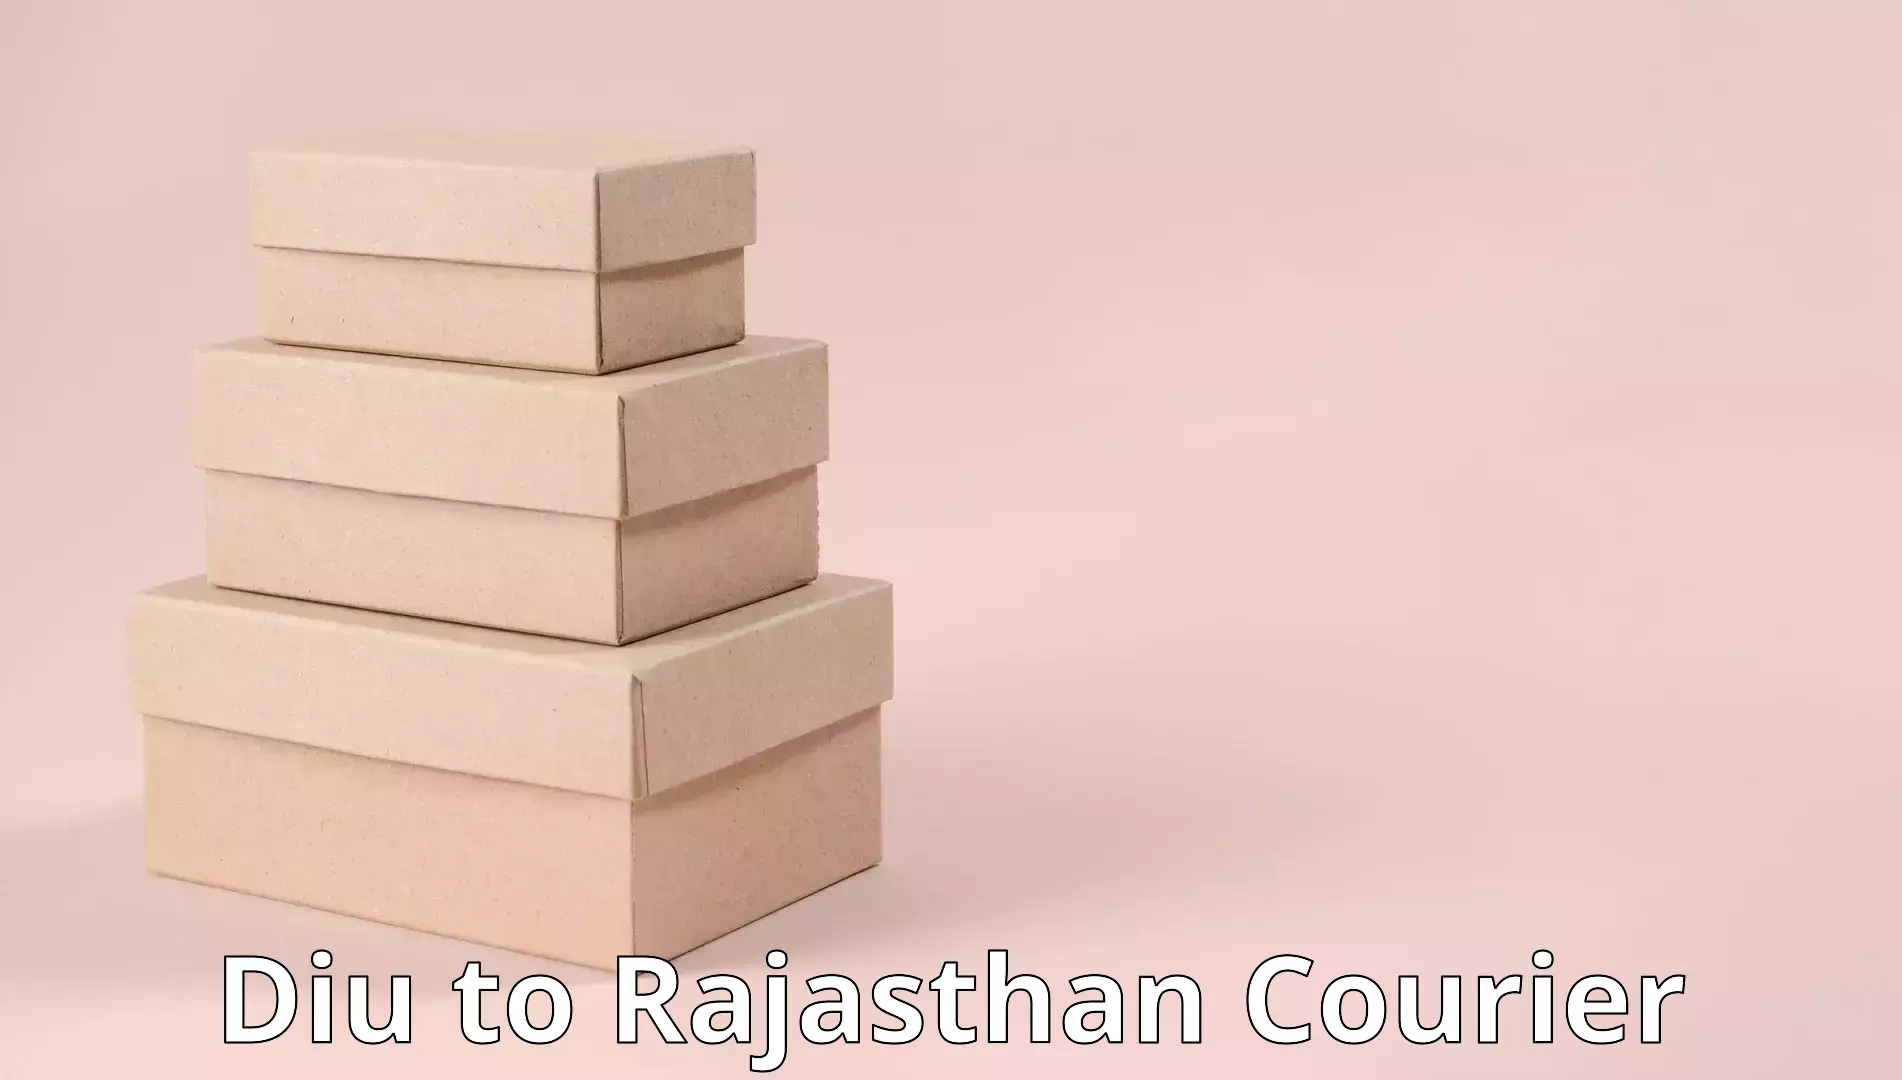 Skilled furniture transporters Diu to Rajasthan